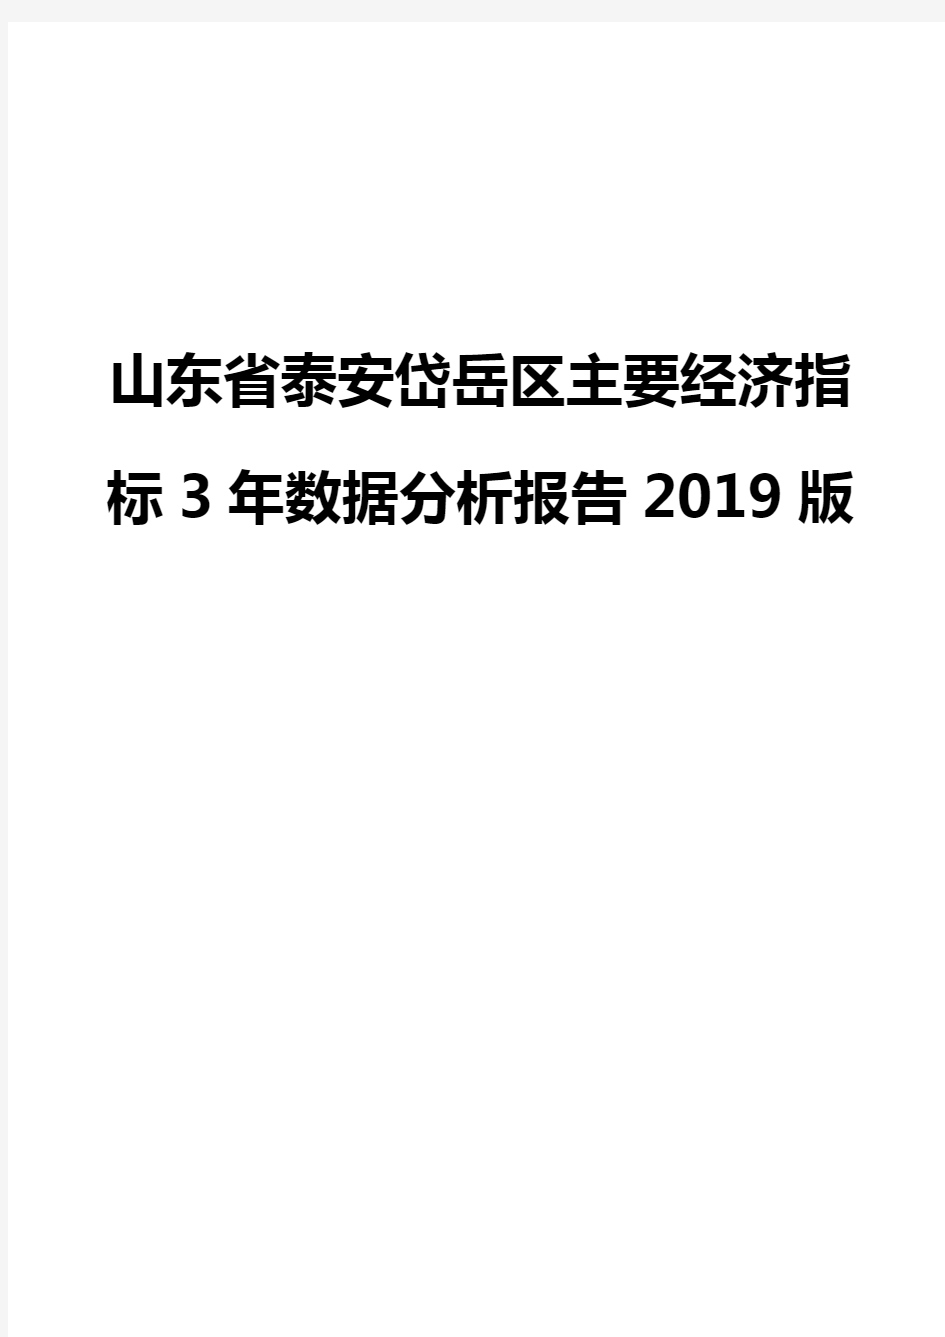 山东省泰安岱岳区主要经济指标3年数据分析报告2019版